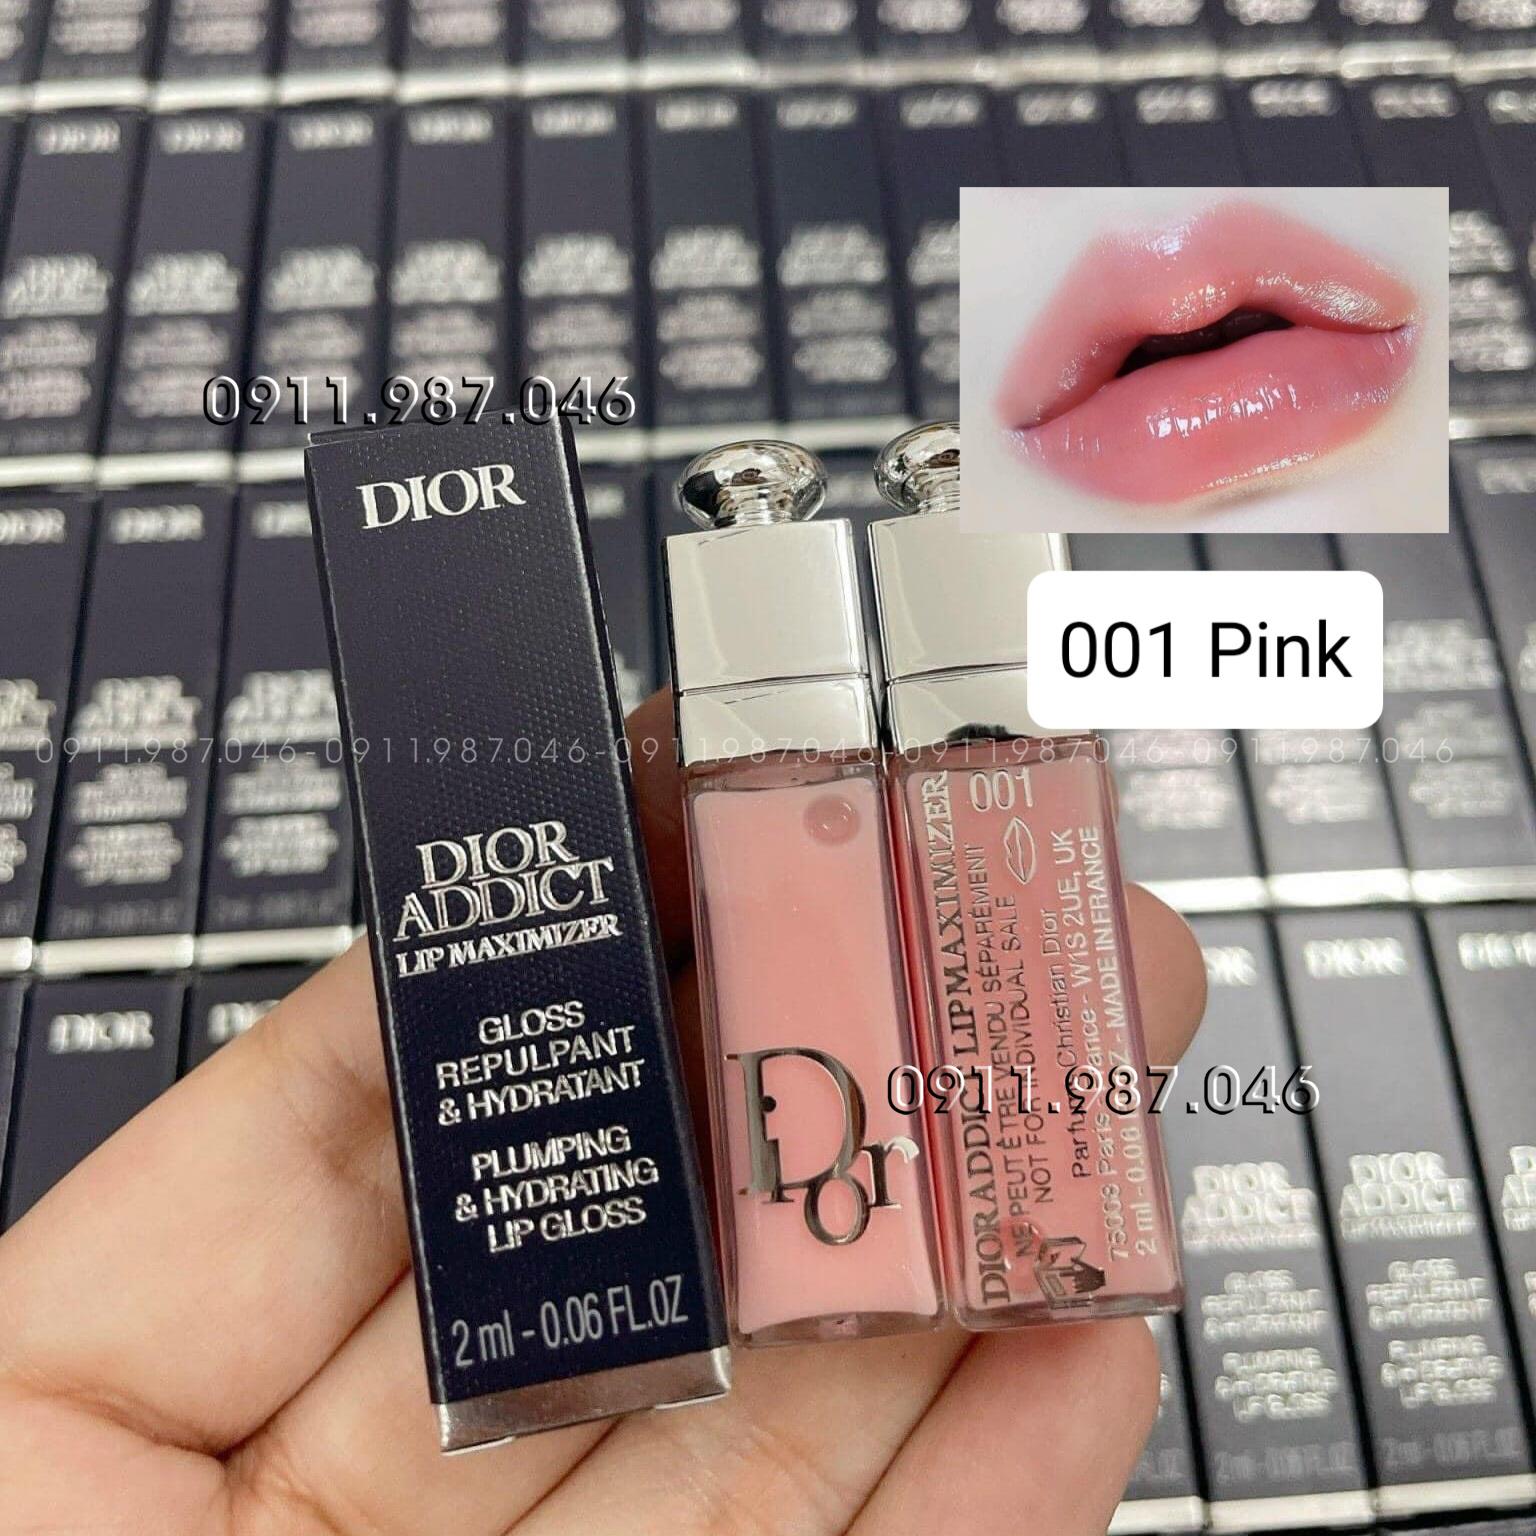 [Mini] Son dưỡng Dior Collagen 001 Pink hồng nhẹ chính hãng - PN158480